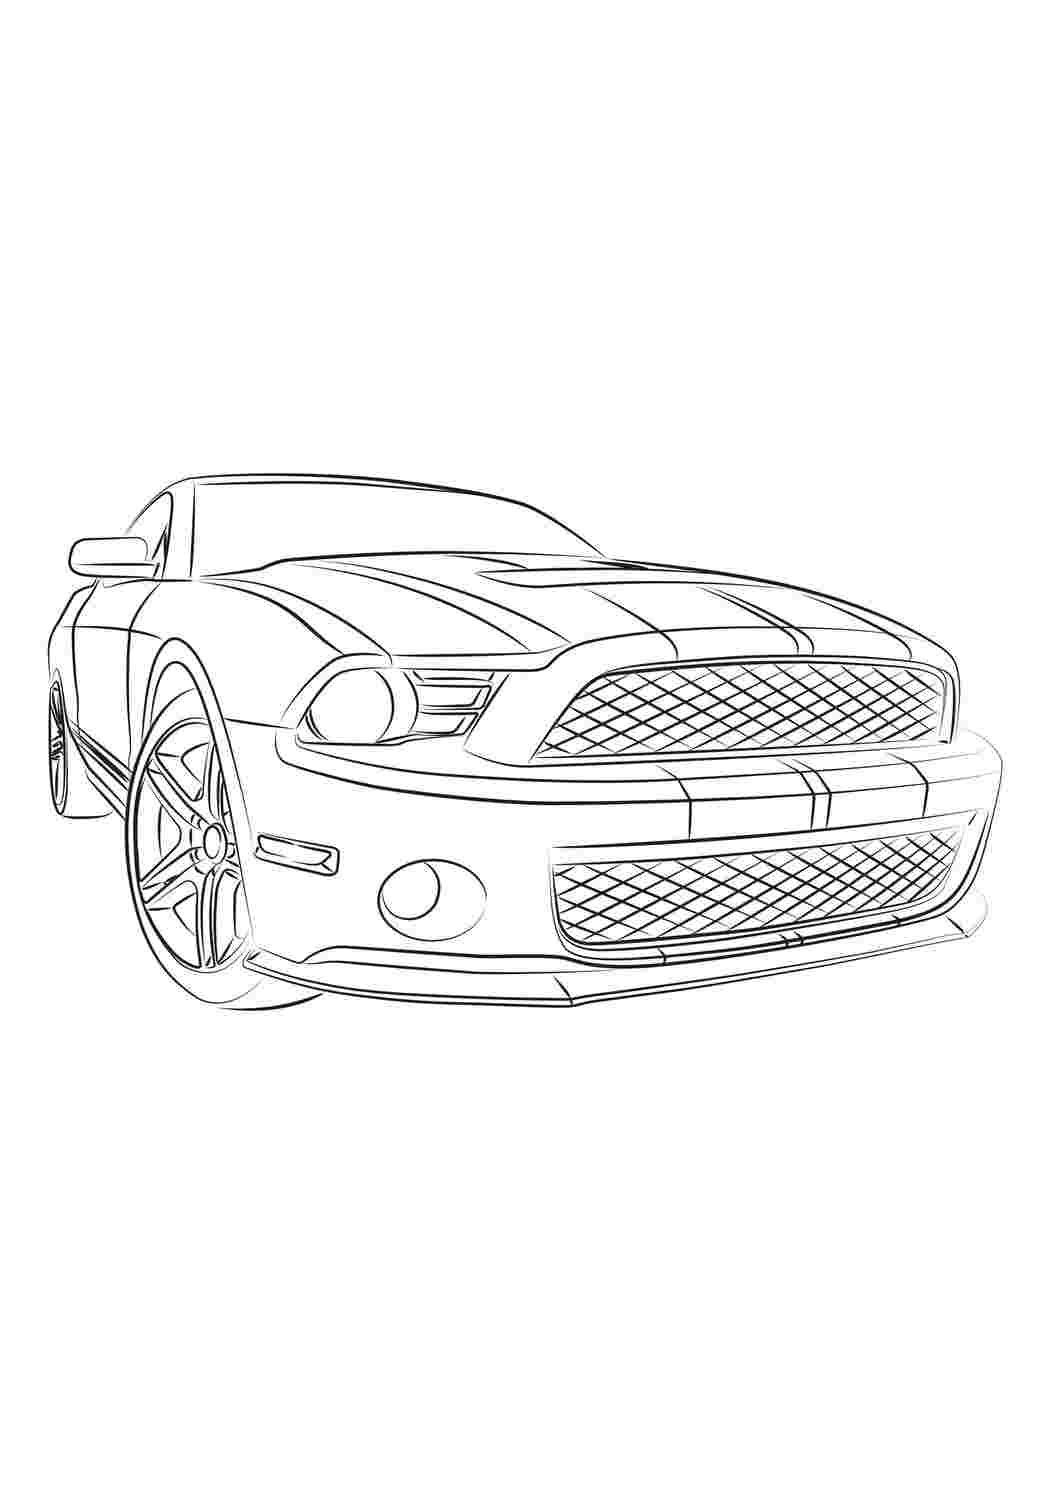 Раскраска Гоночный авто Форд Мустанг | распечатать раскраски для детей